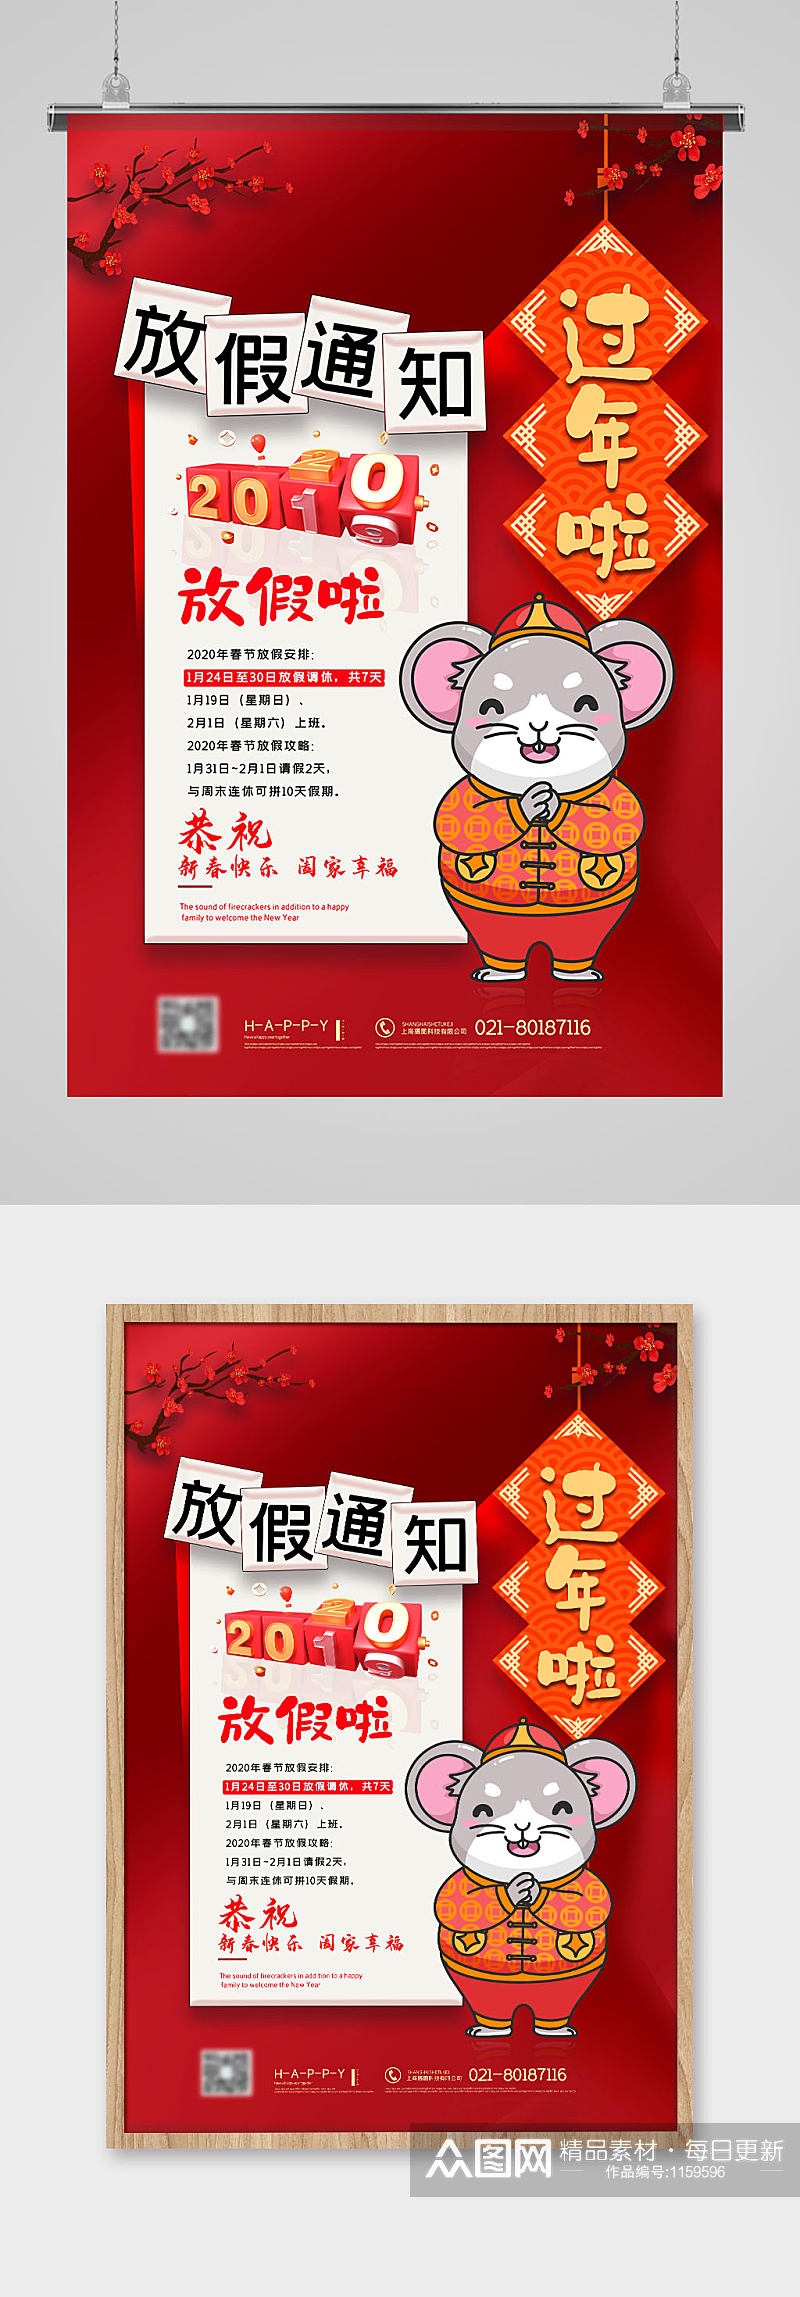 中国风红色鼠年新年春节放假通知海报素材